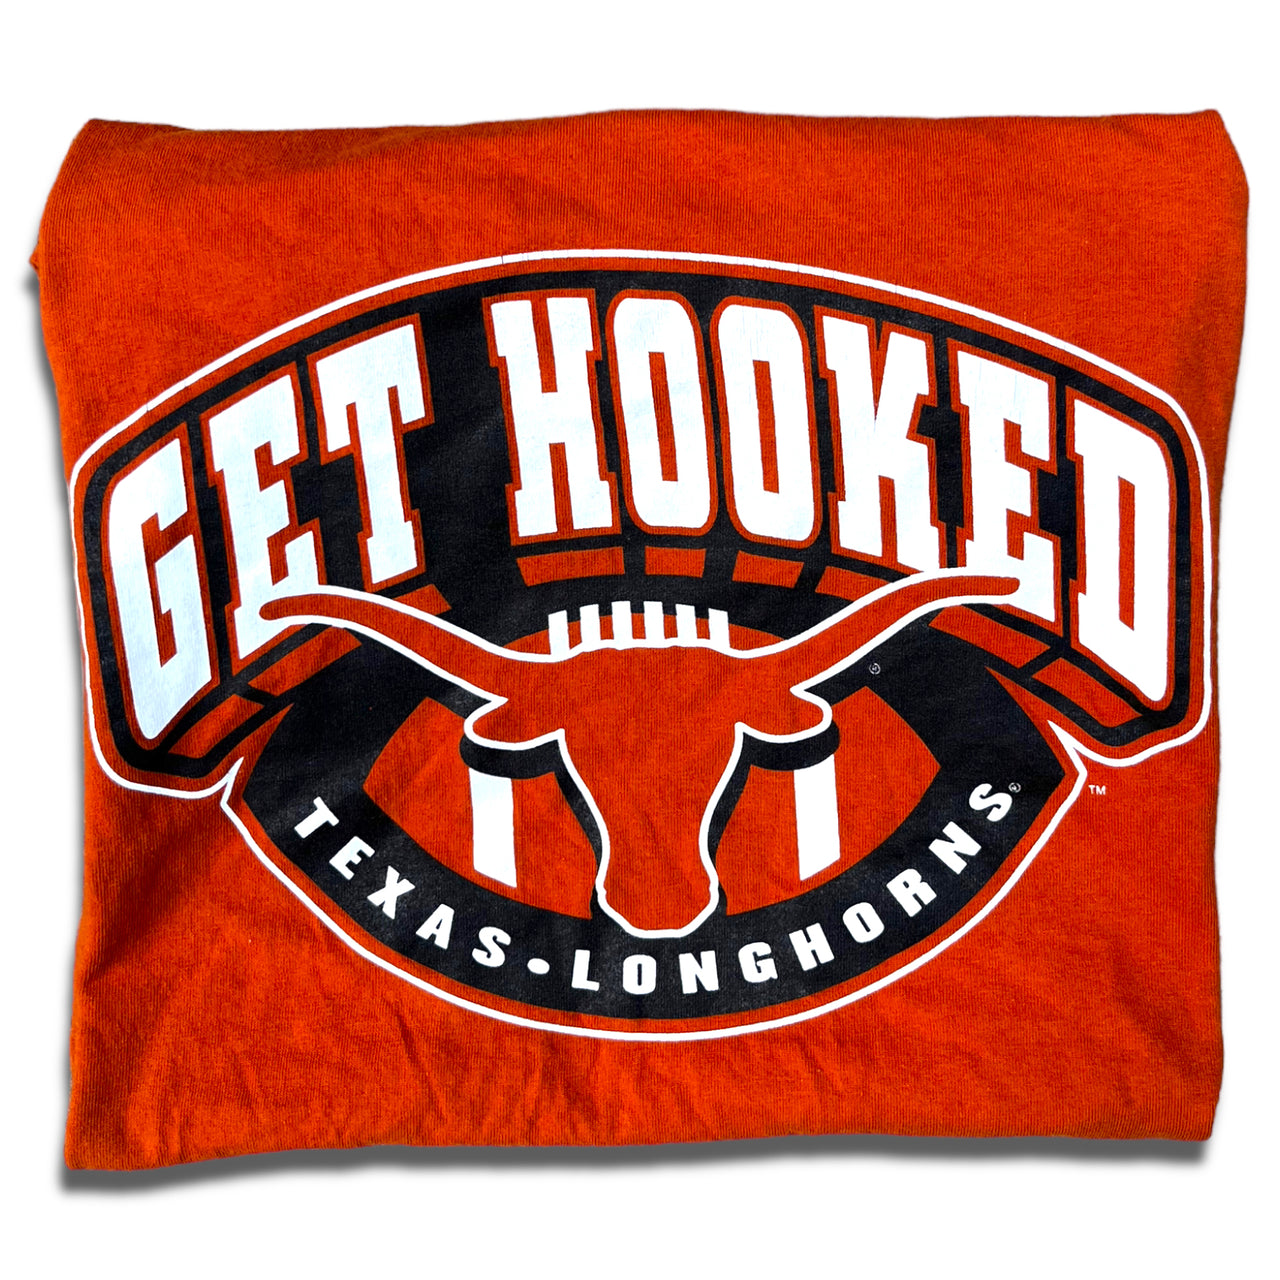 Texas Longhorns “Get Hooked” Vintage Tee Large